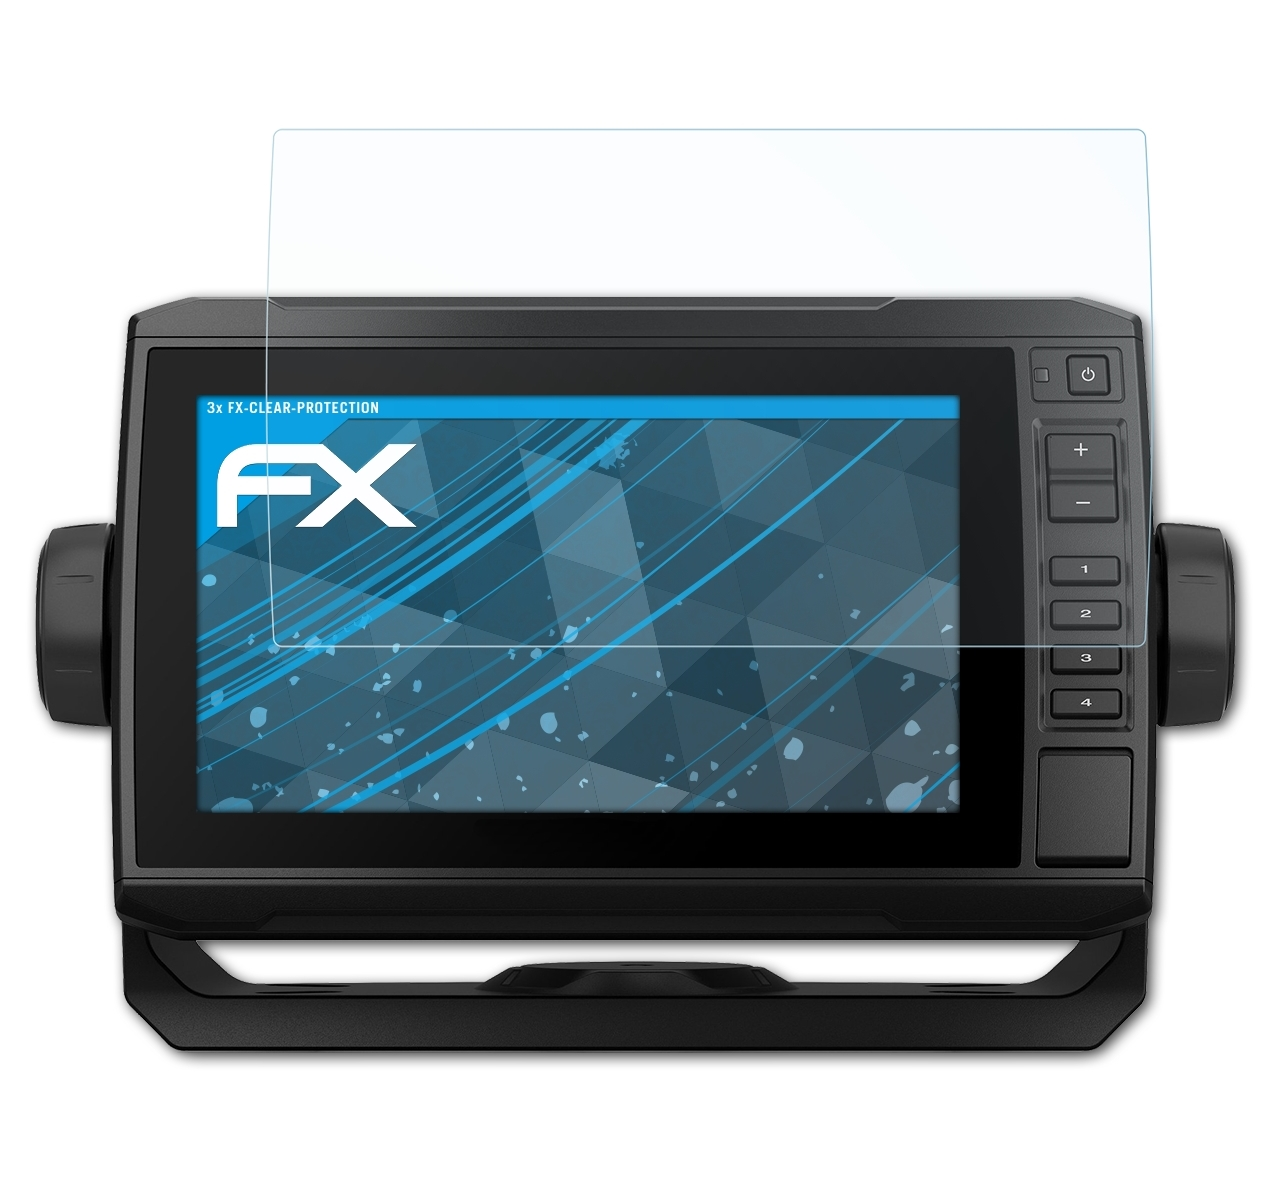 ATFOLIX 3x FX-Clear UHD 72sv) Garmin ECHOMap Displayschutz(für